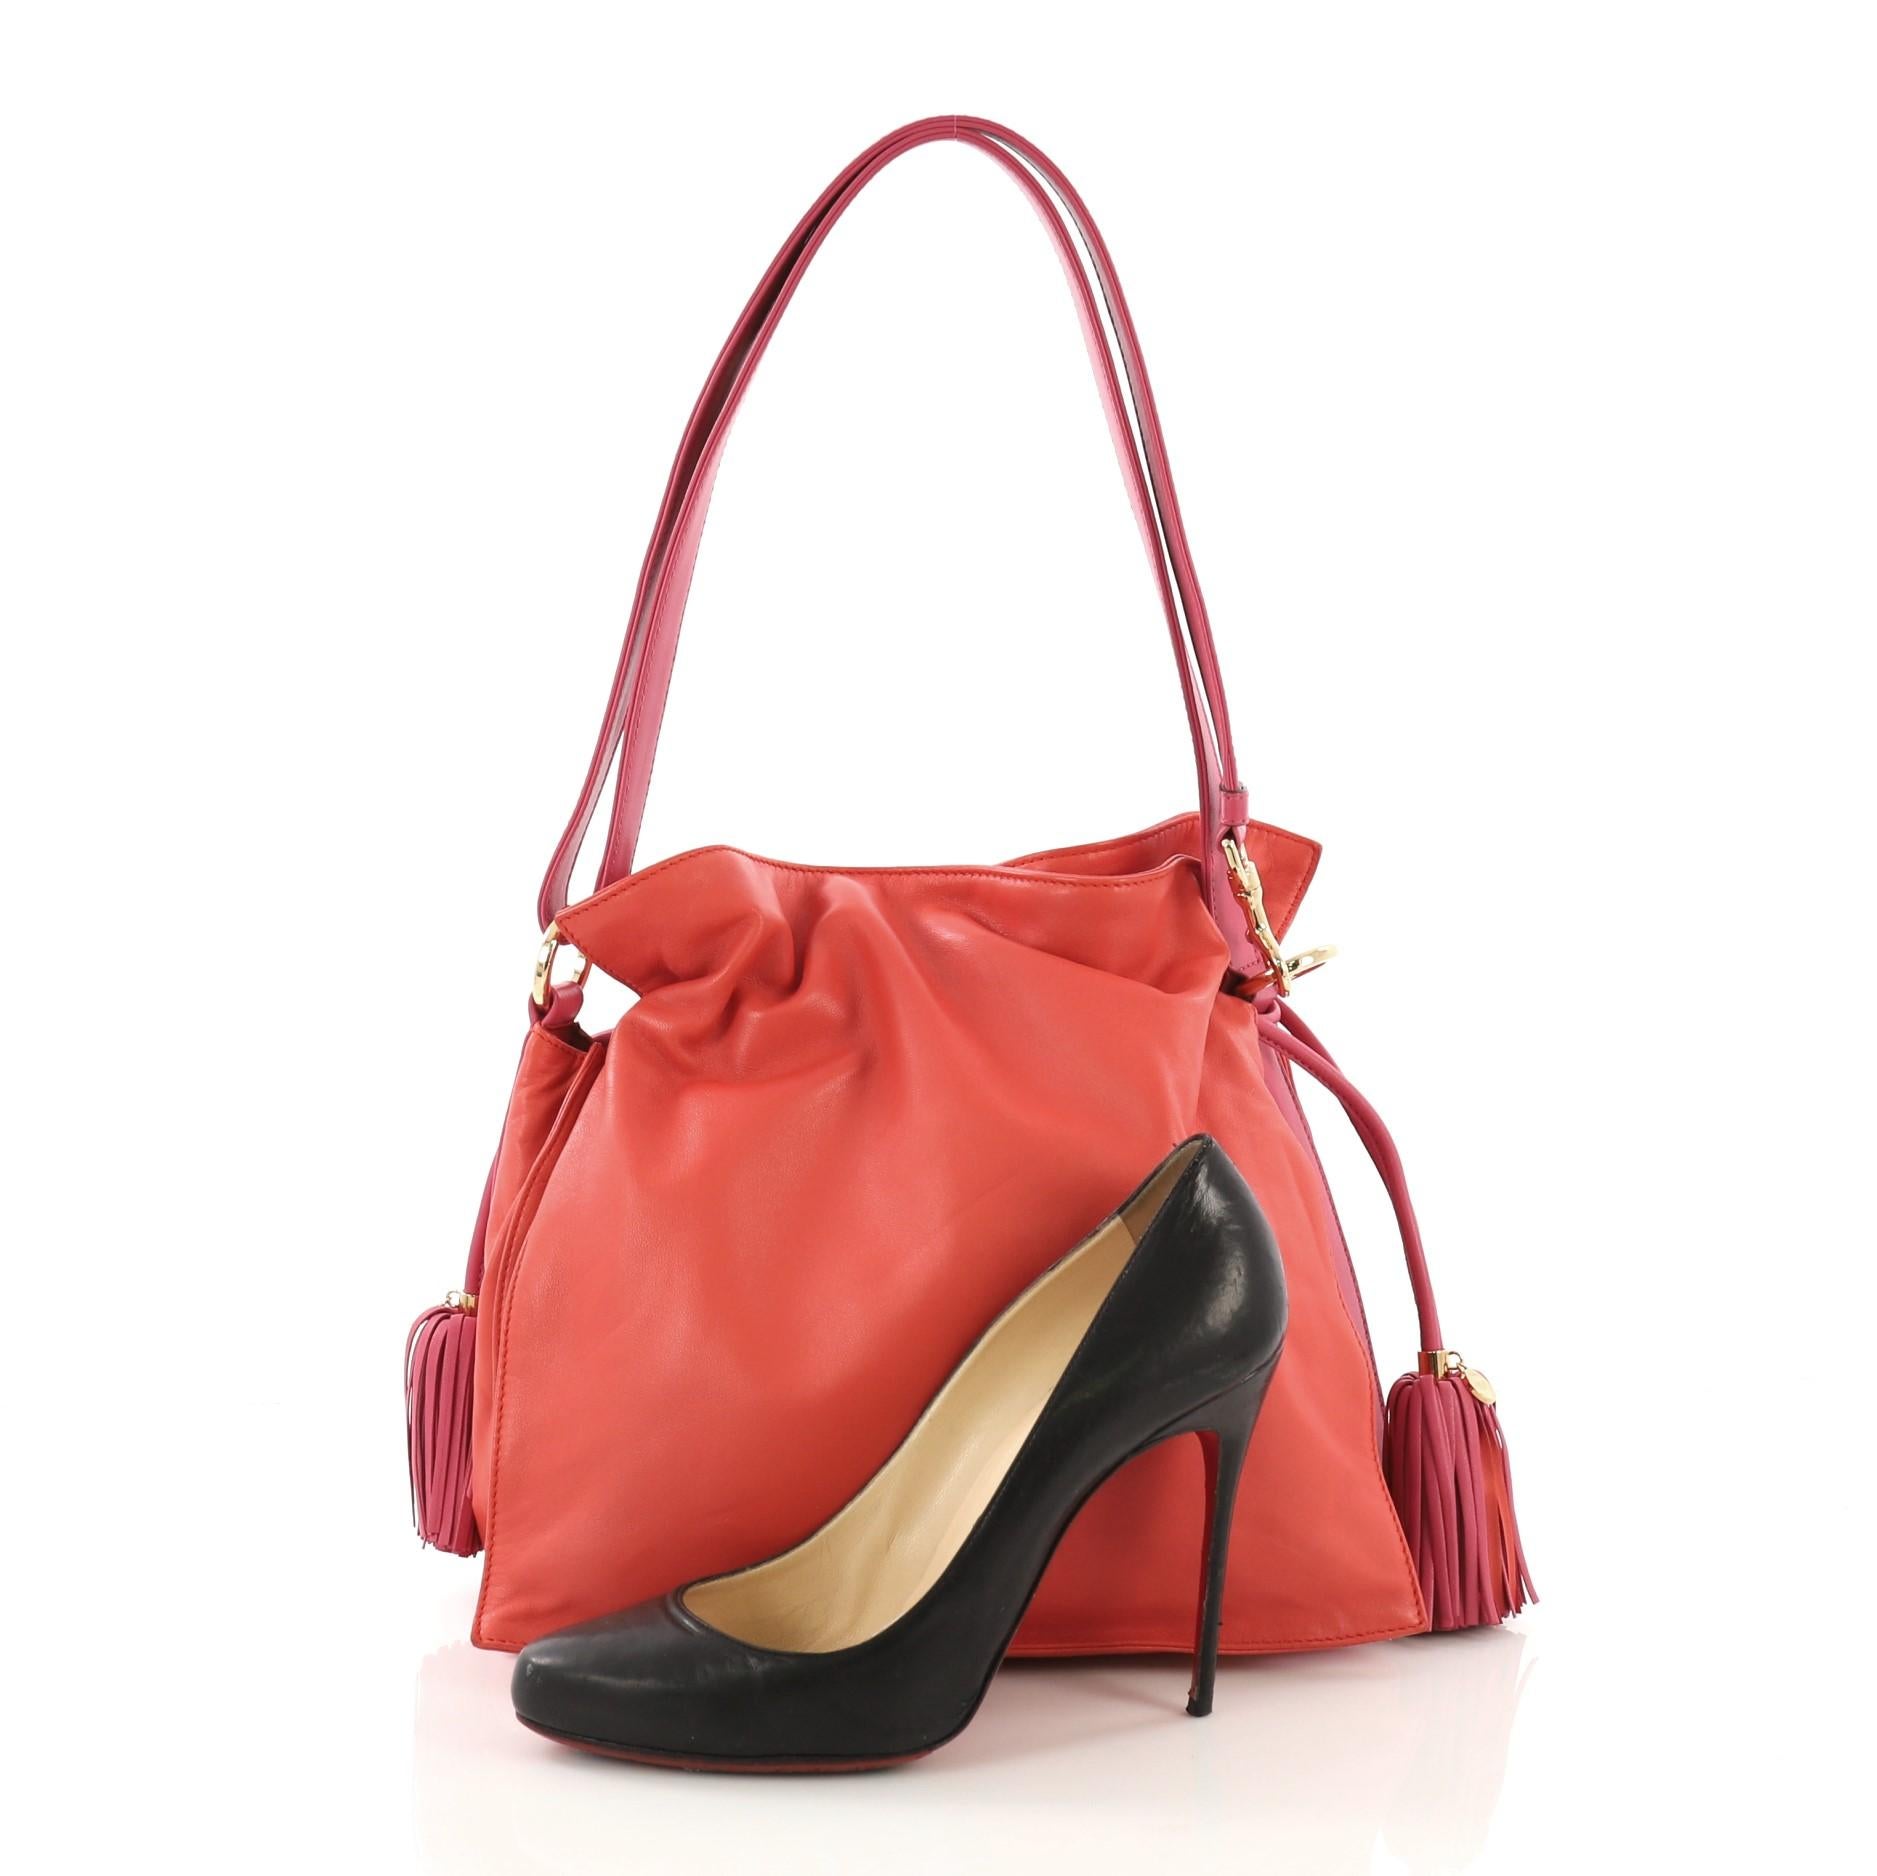 Diese Loewe Flamenco Bag Leather Medium ist aus rotem und rosafarbenem Leder gefertigt und verfügt über einen Schultergurt aus Leder:: einen Kordelzug oben mit Quasten und goldfarbene Beschläge. Der Kordelzugverschluss öffnet sich zu einem roten